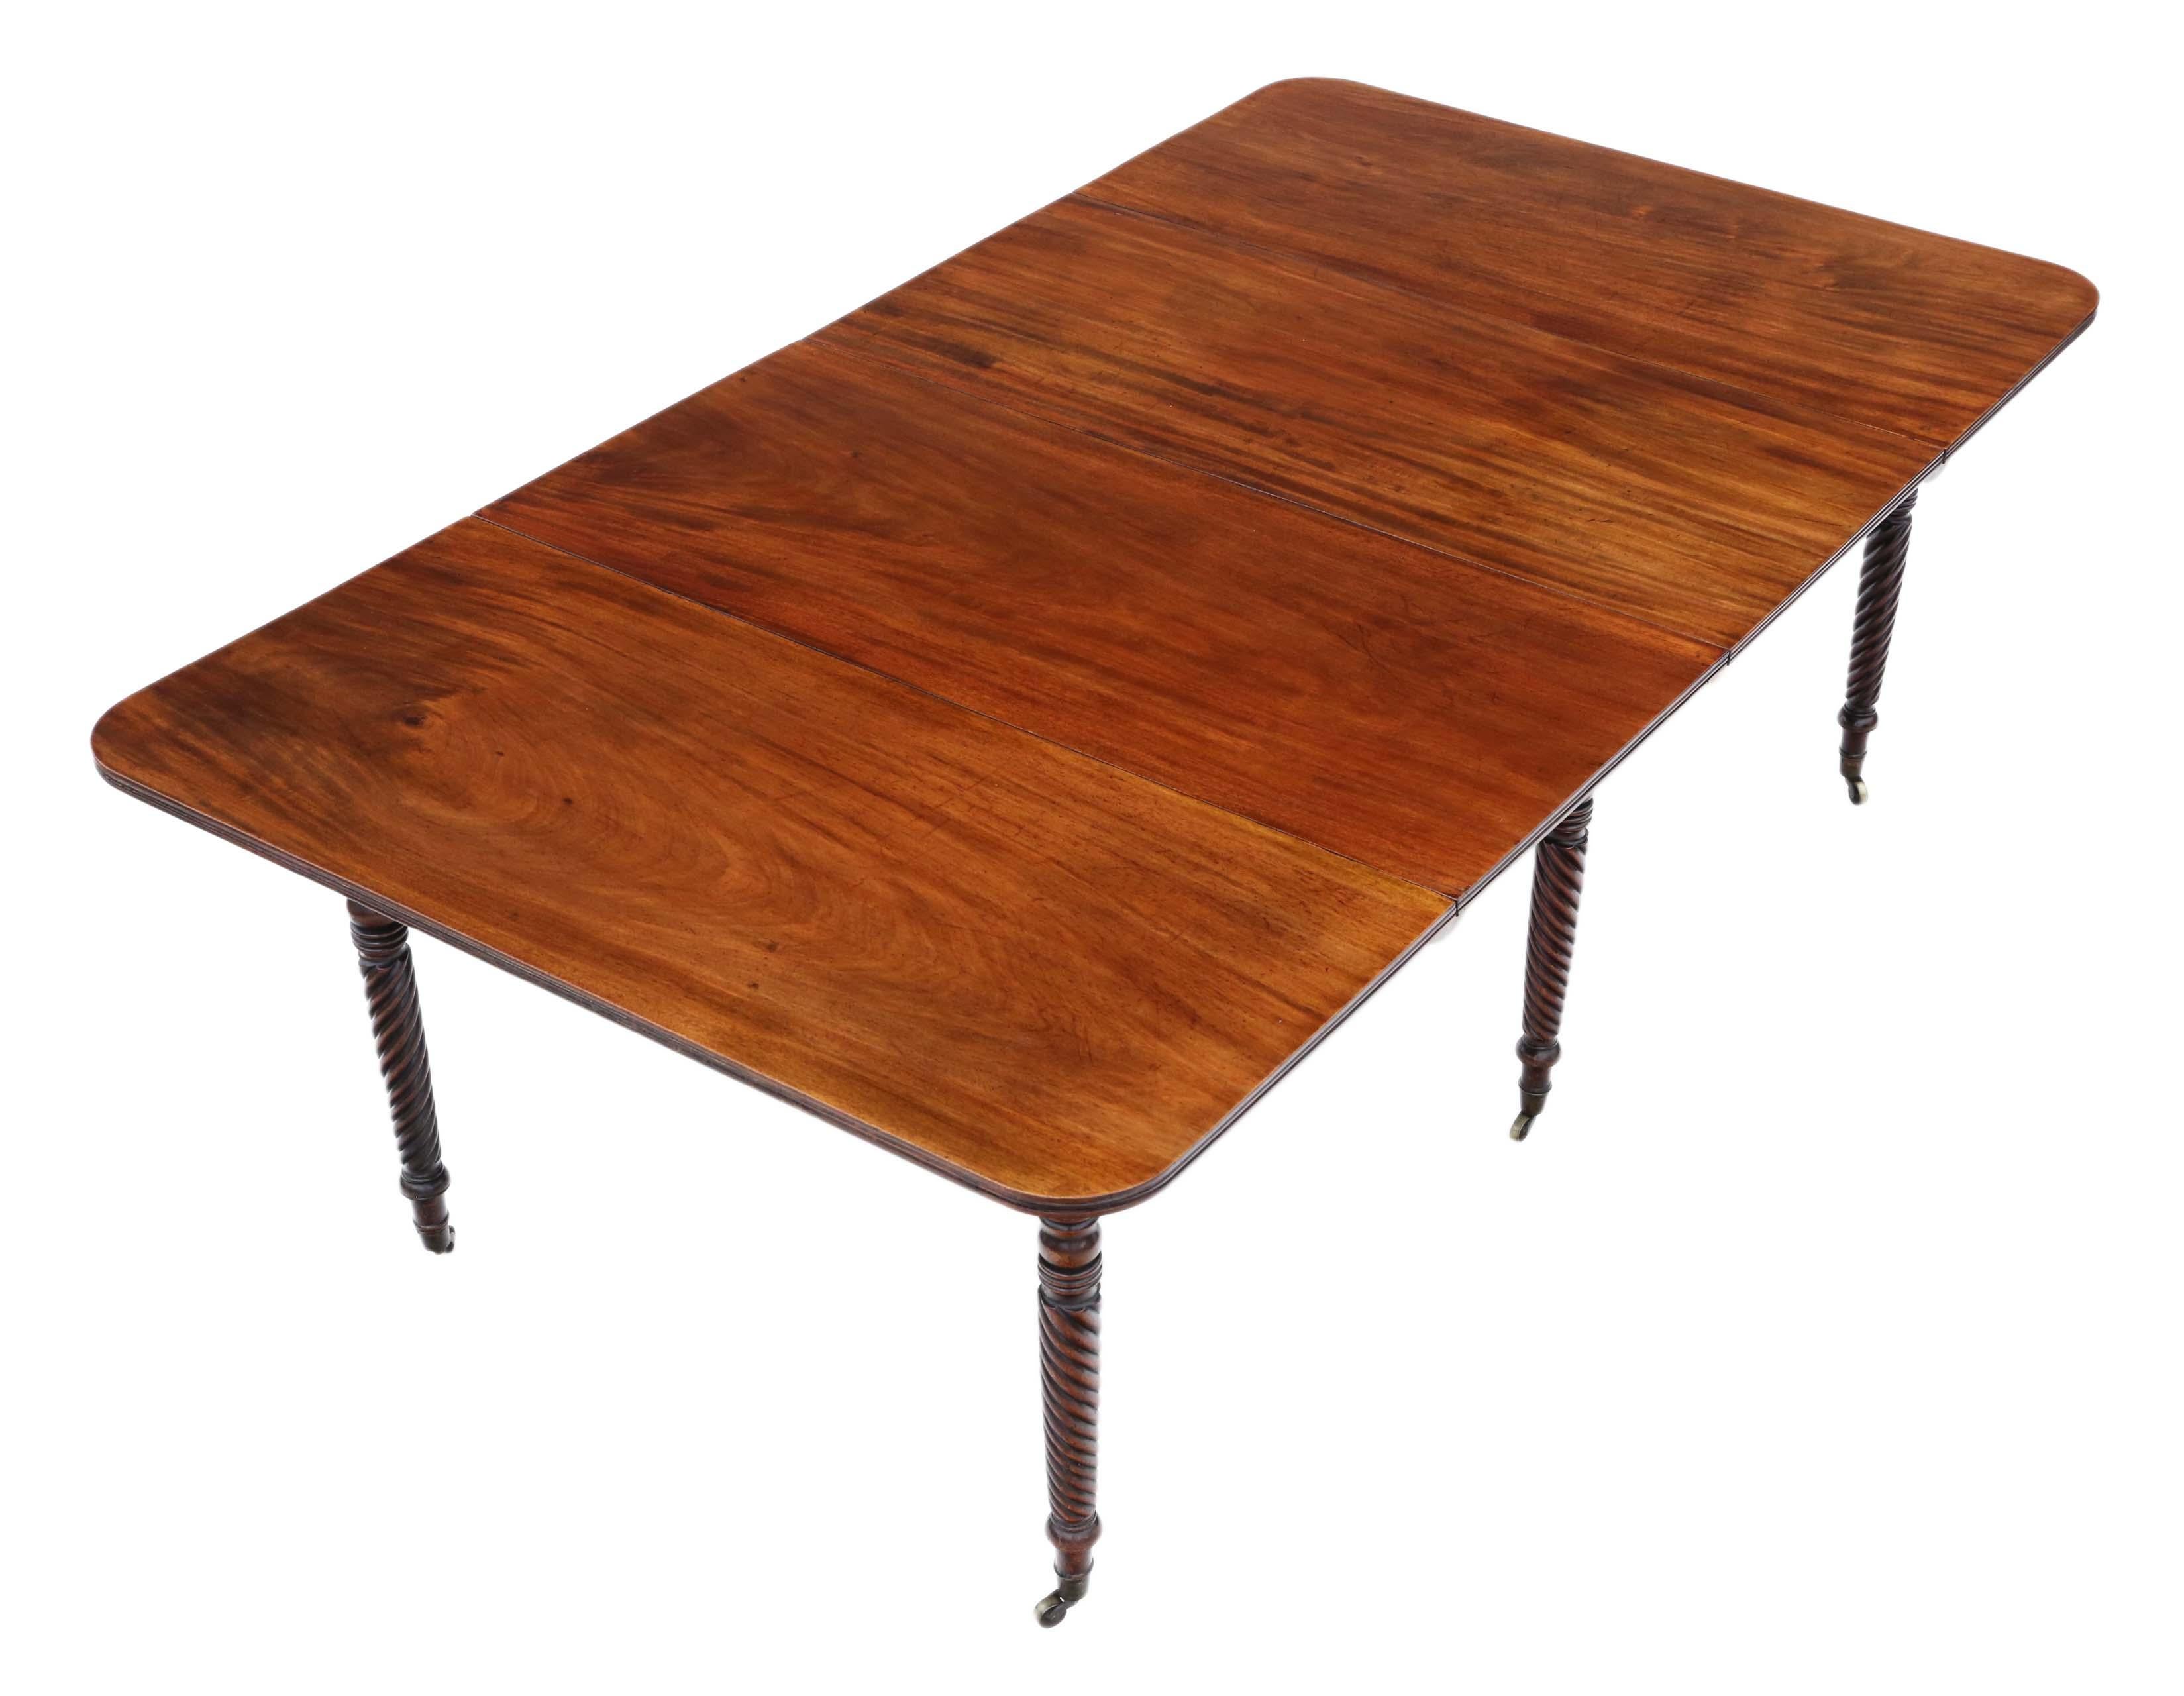 Antique grande table à manger à rallonge en acajou de qualité supérieure, 19ème siècle C1825, à la manière de Gillows. Deux feuilles amovibles.

La table a une belle couleur claire et moelleuse, très recherchée, avec des pieds minces et